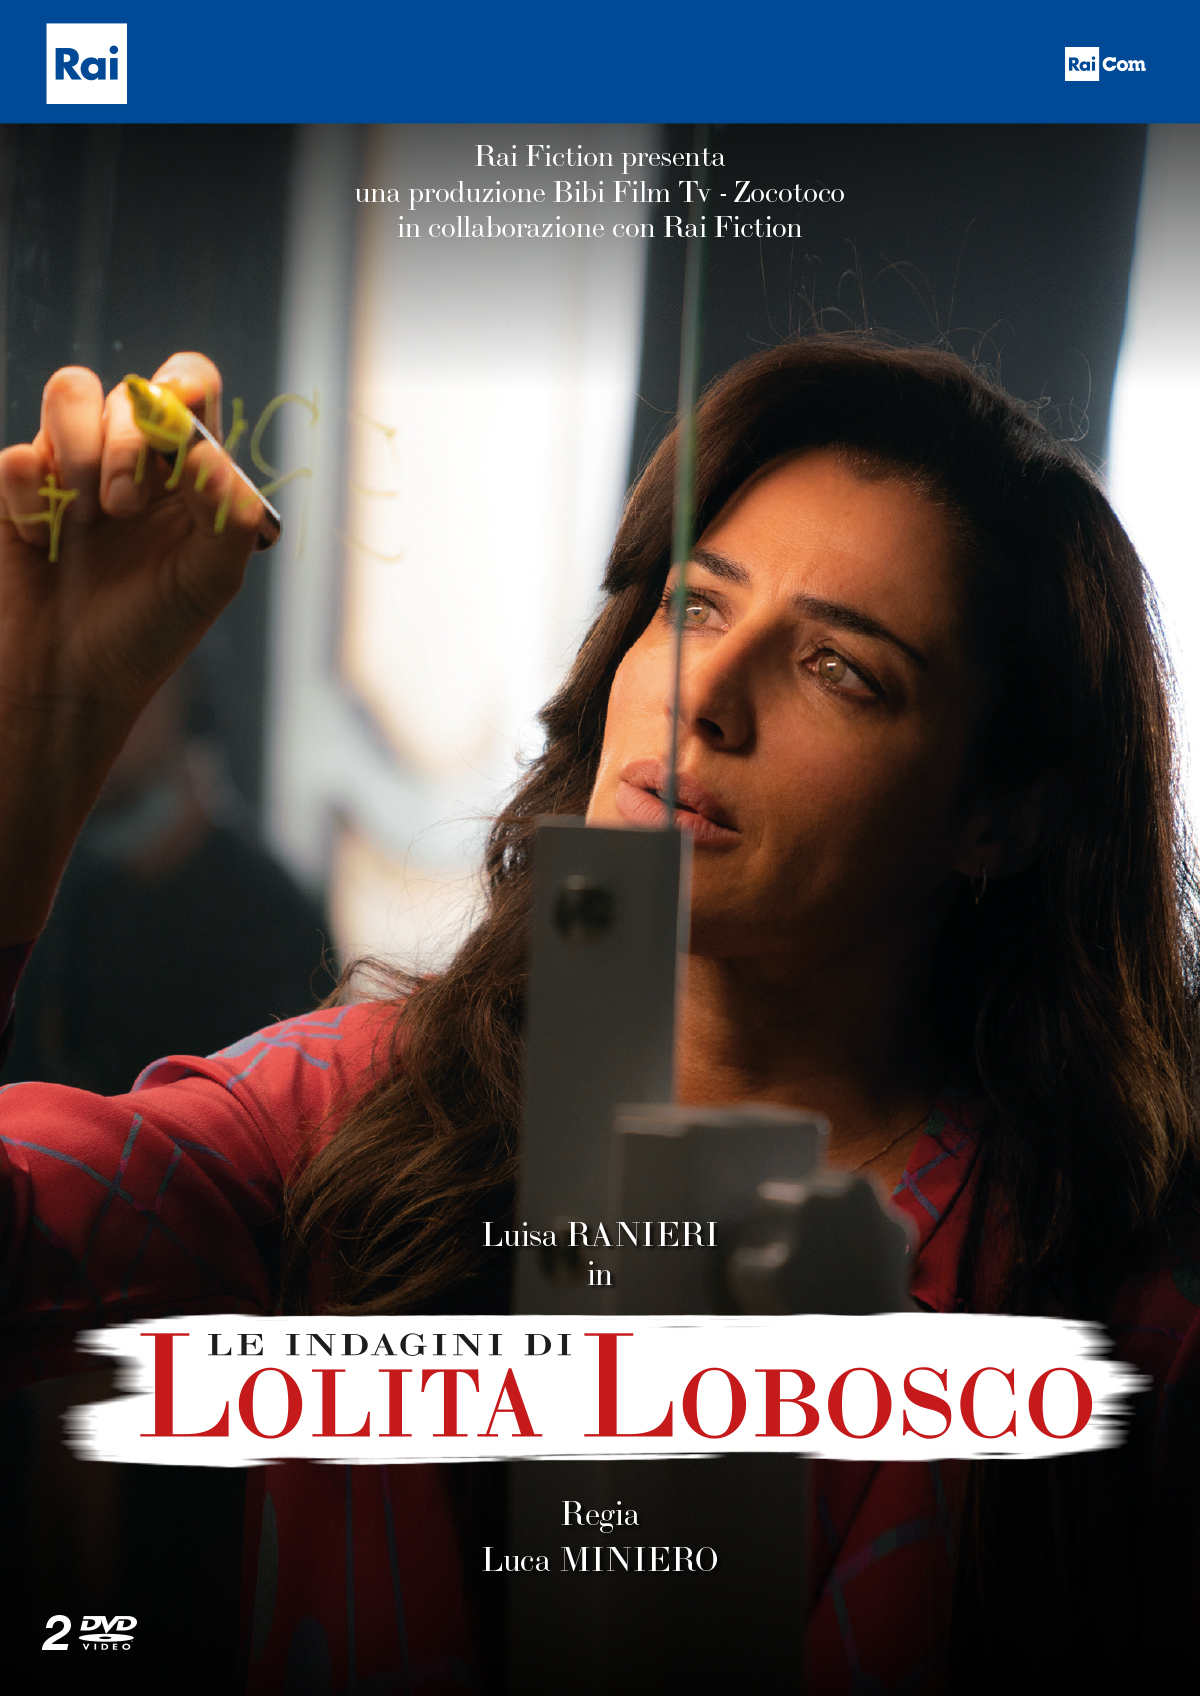 copertina della serie tv le indagini di lolita lobosco